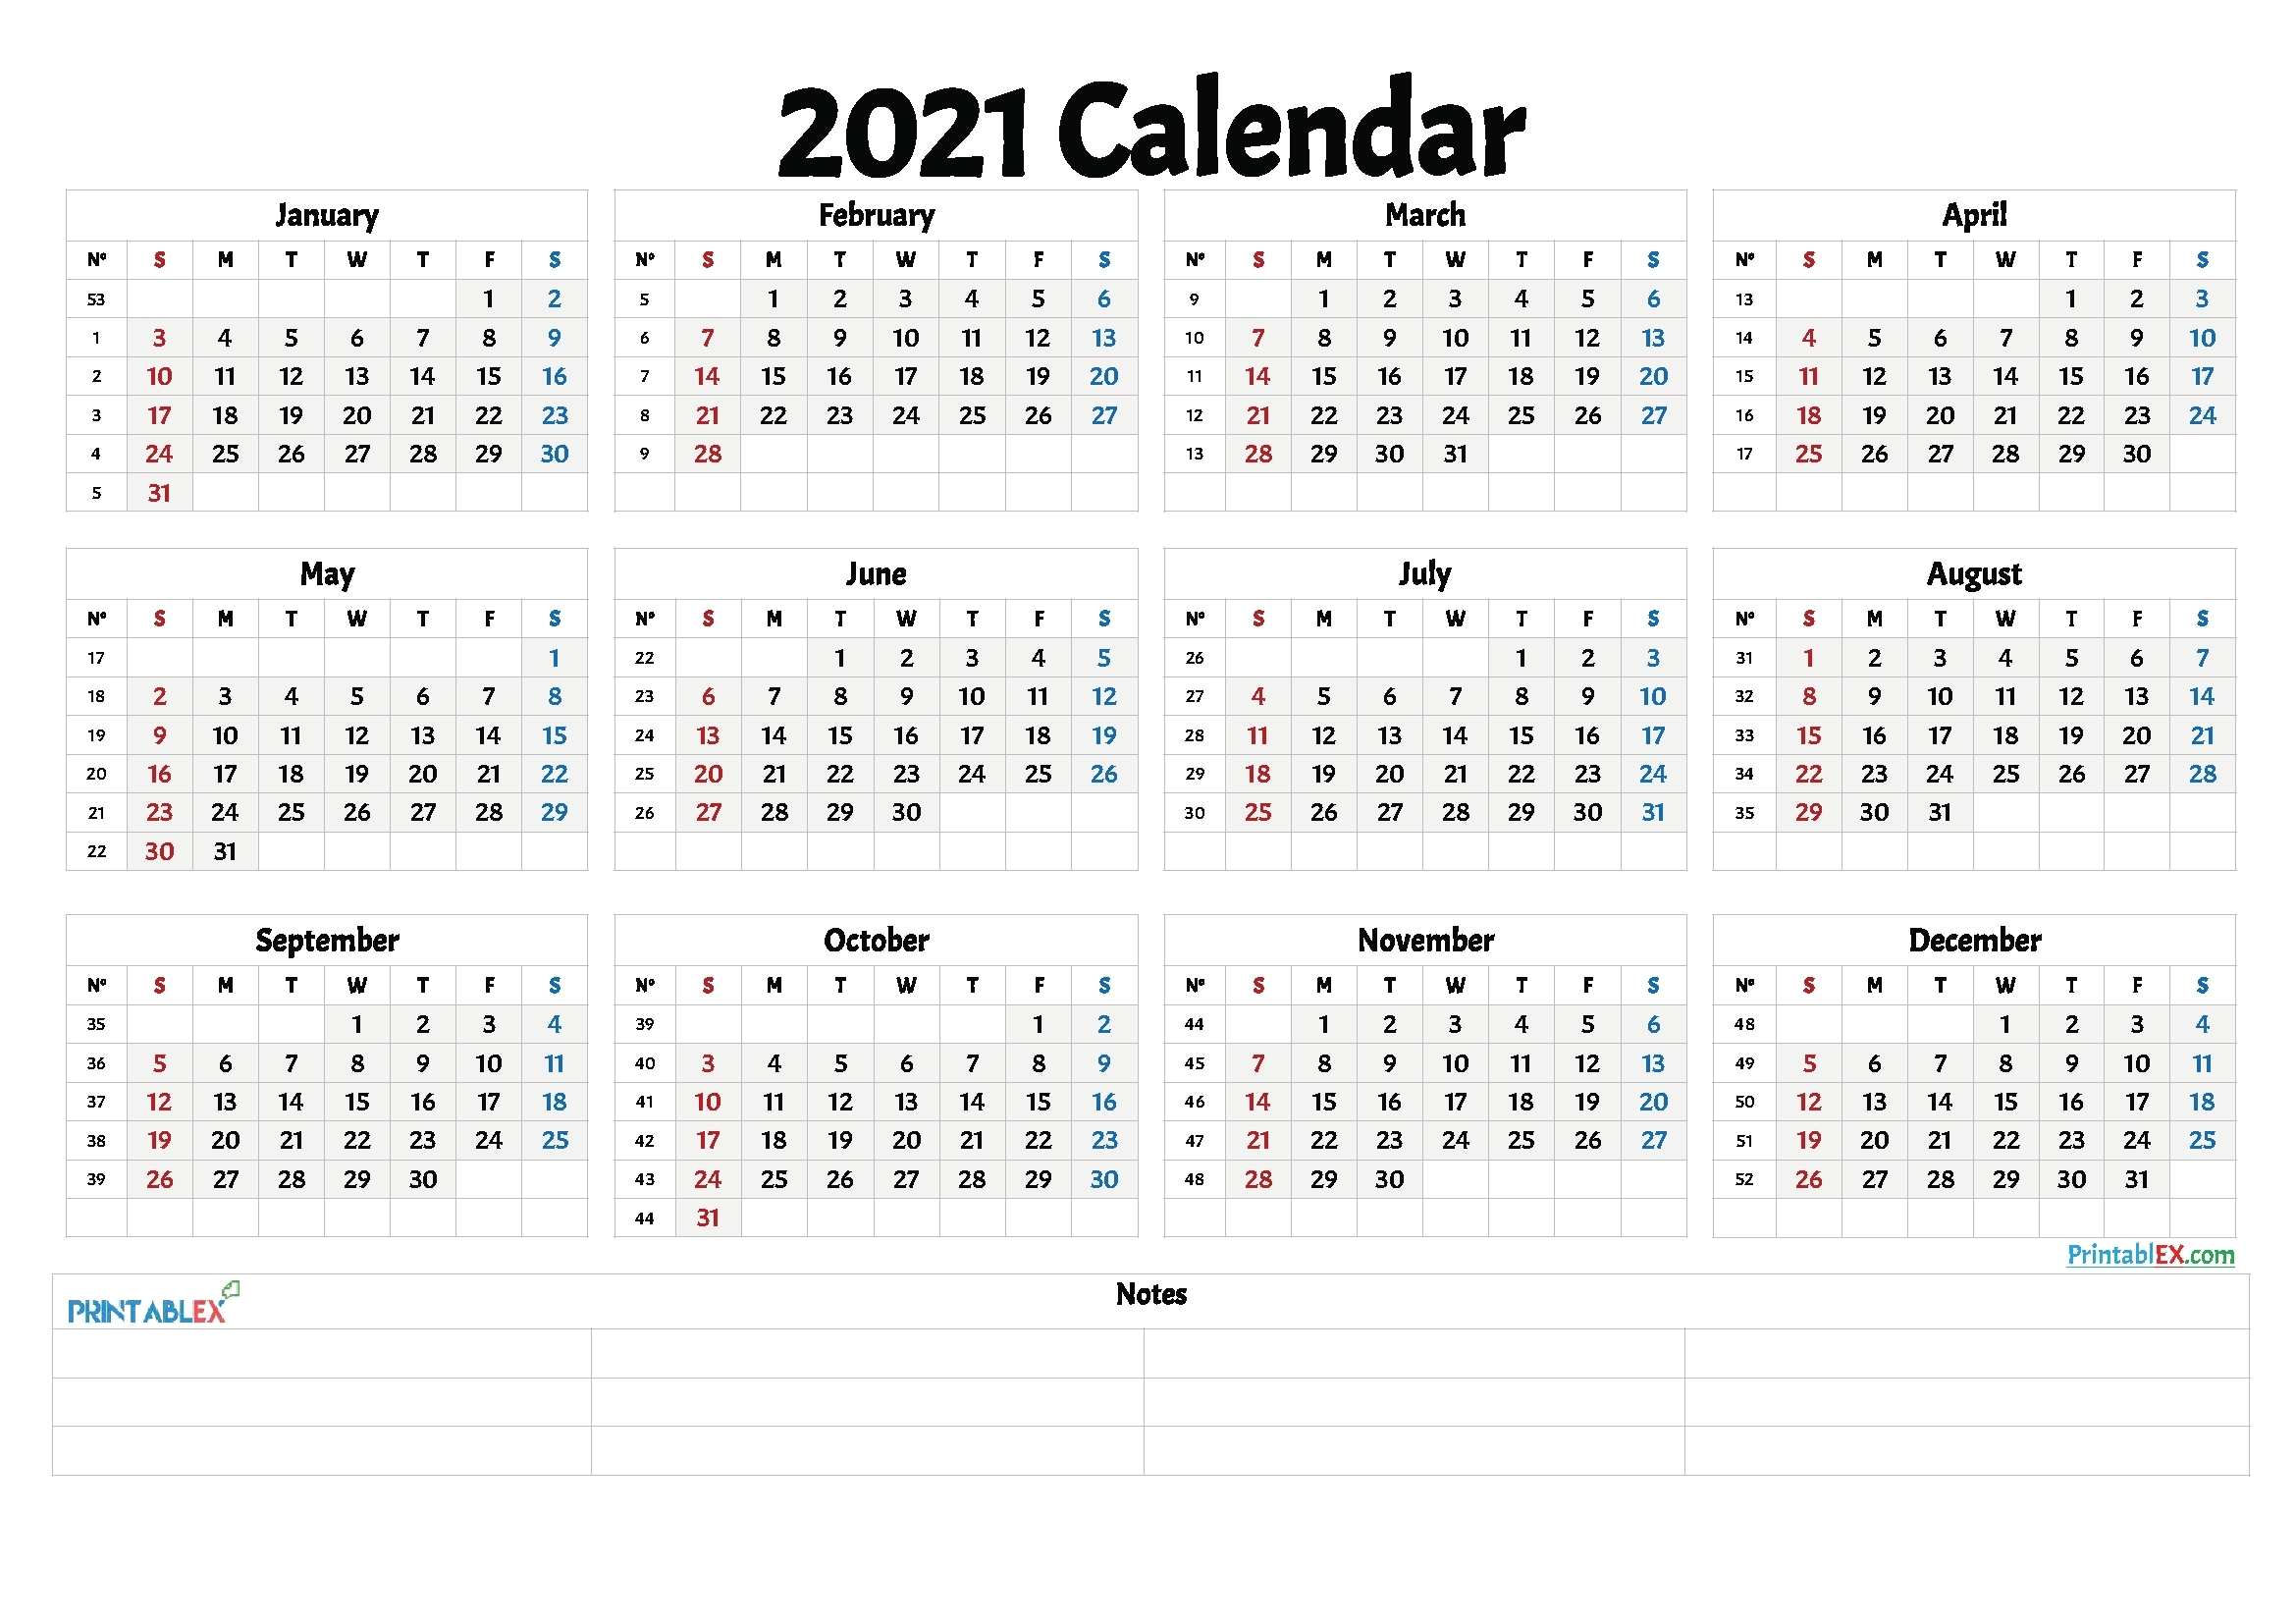 Excel Calendar 2021 With Week Numbers - Calendar